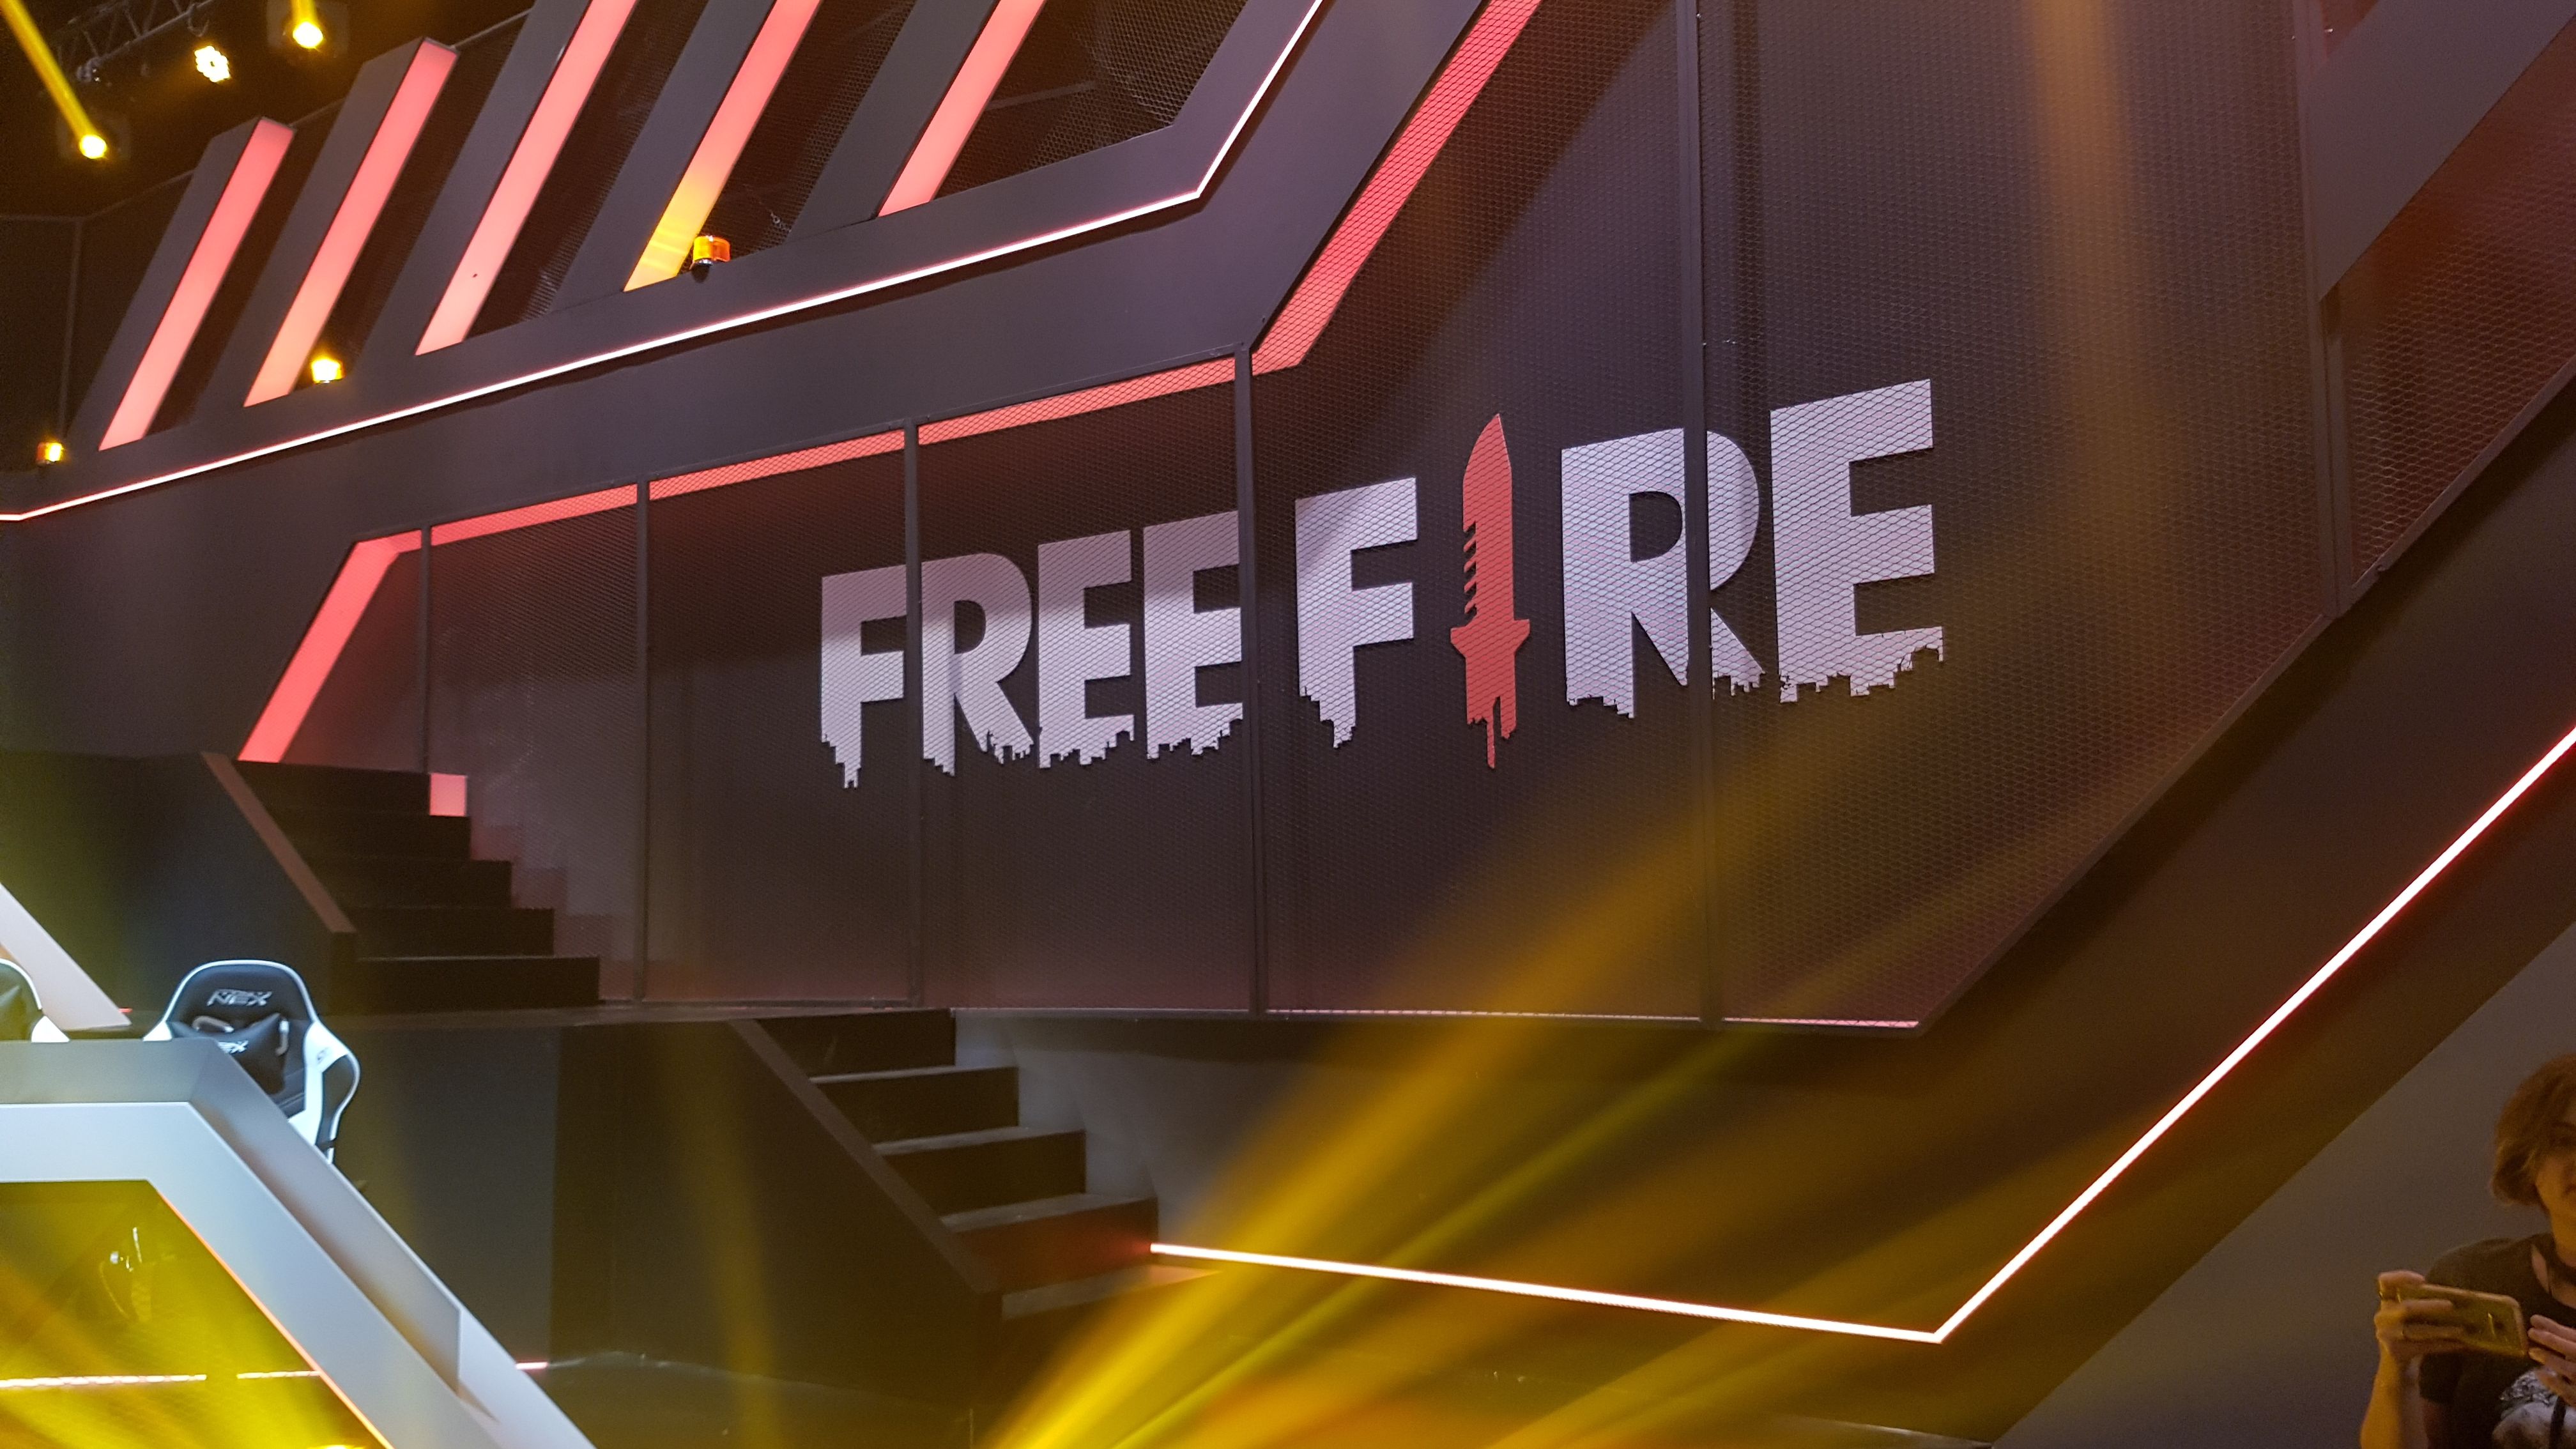 Free Fire: edição 2022 do mundial acontece em Singapura